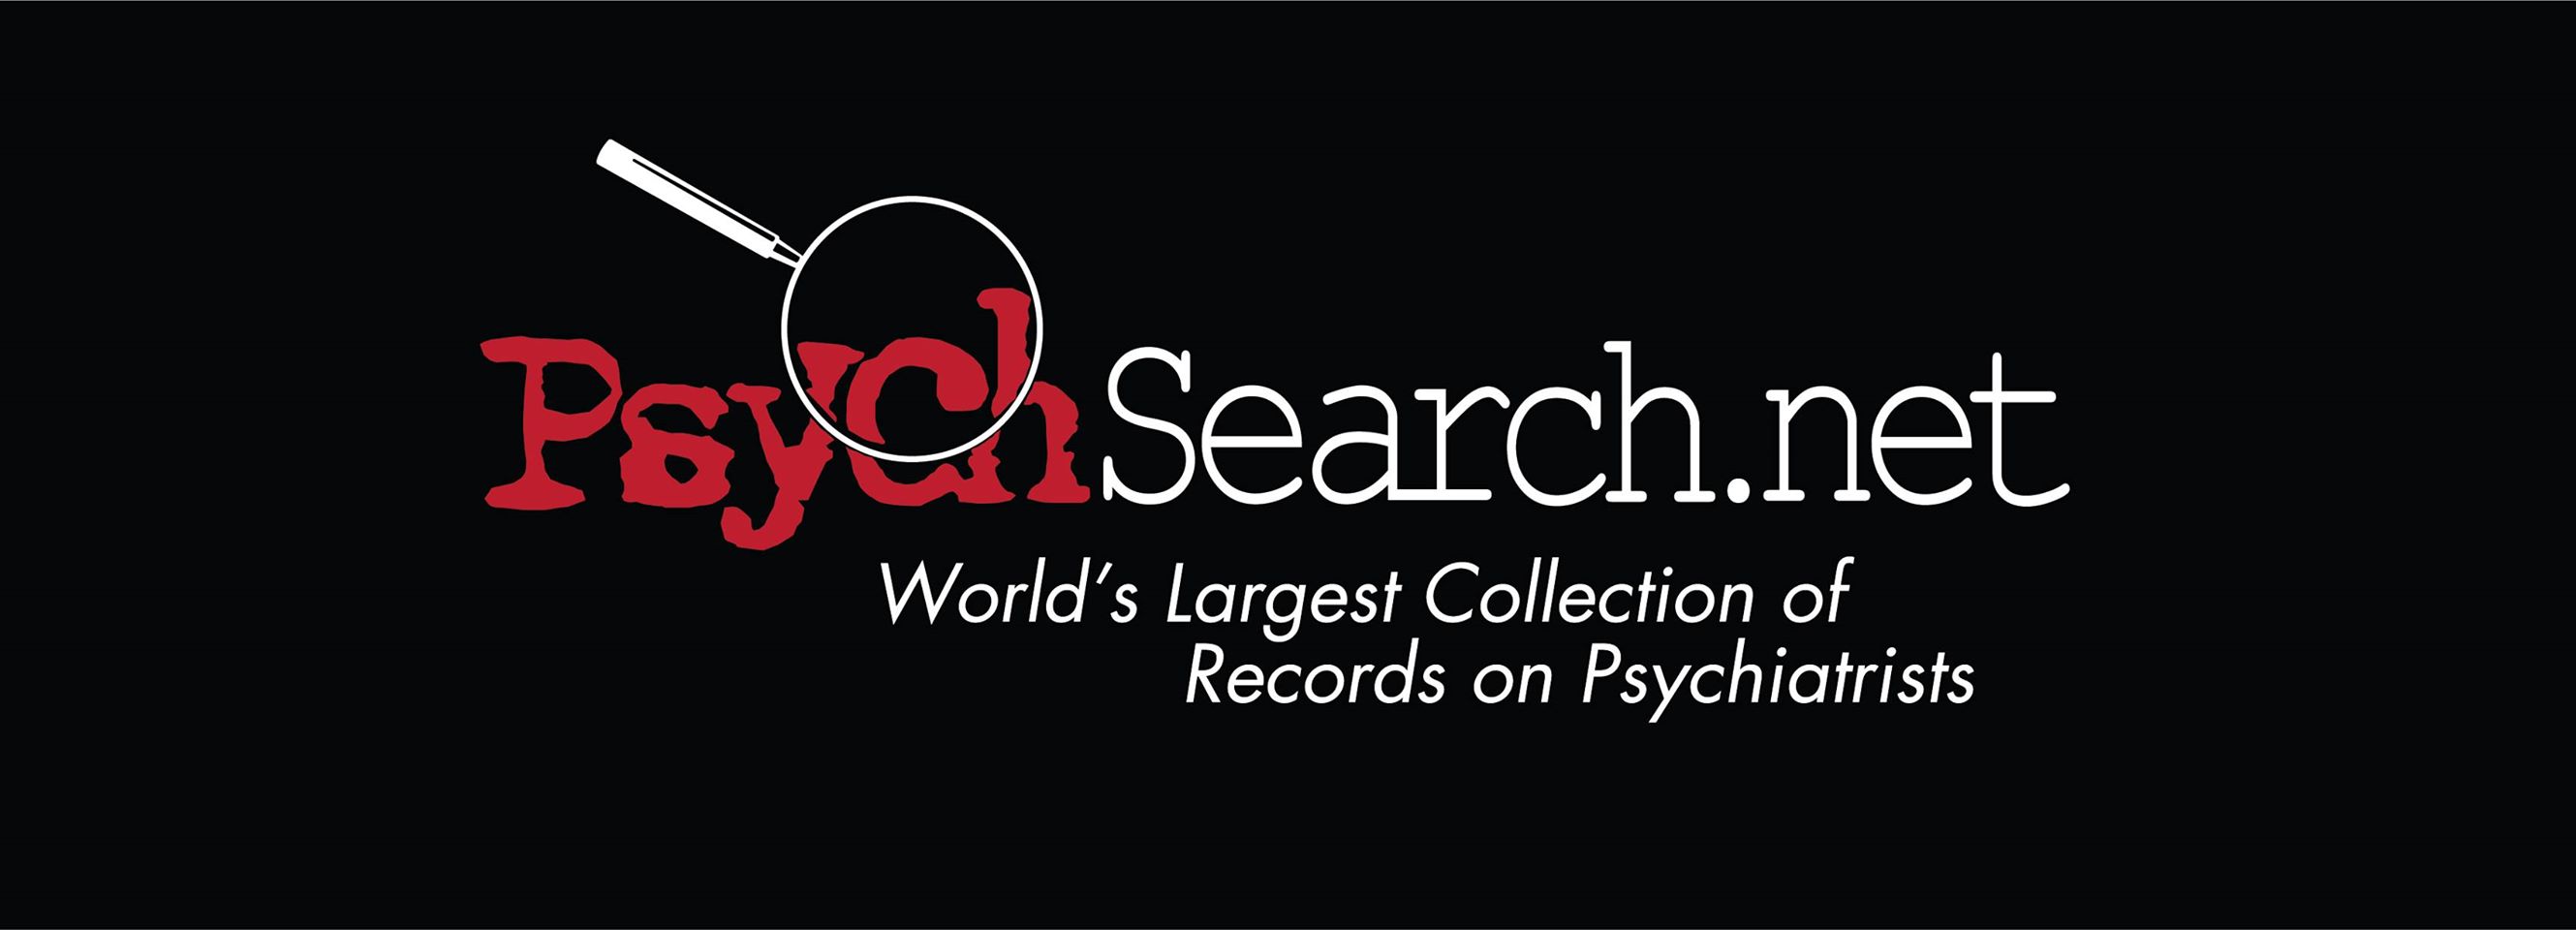 www.PsychSearch.net